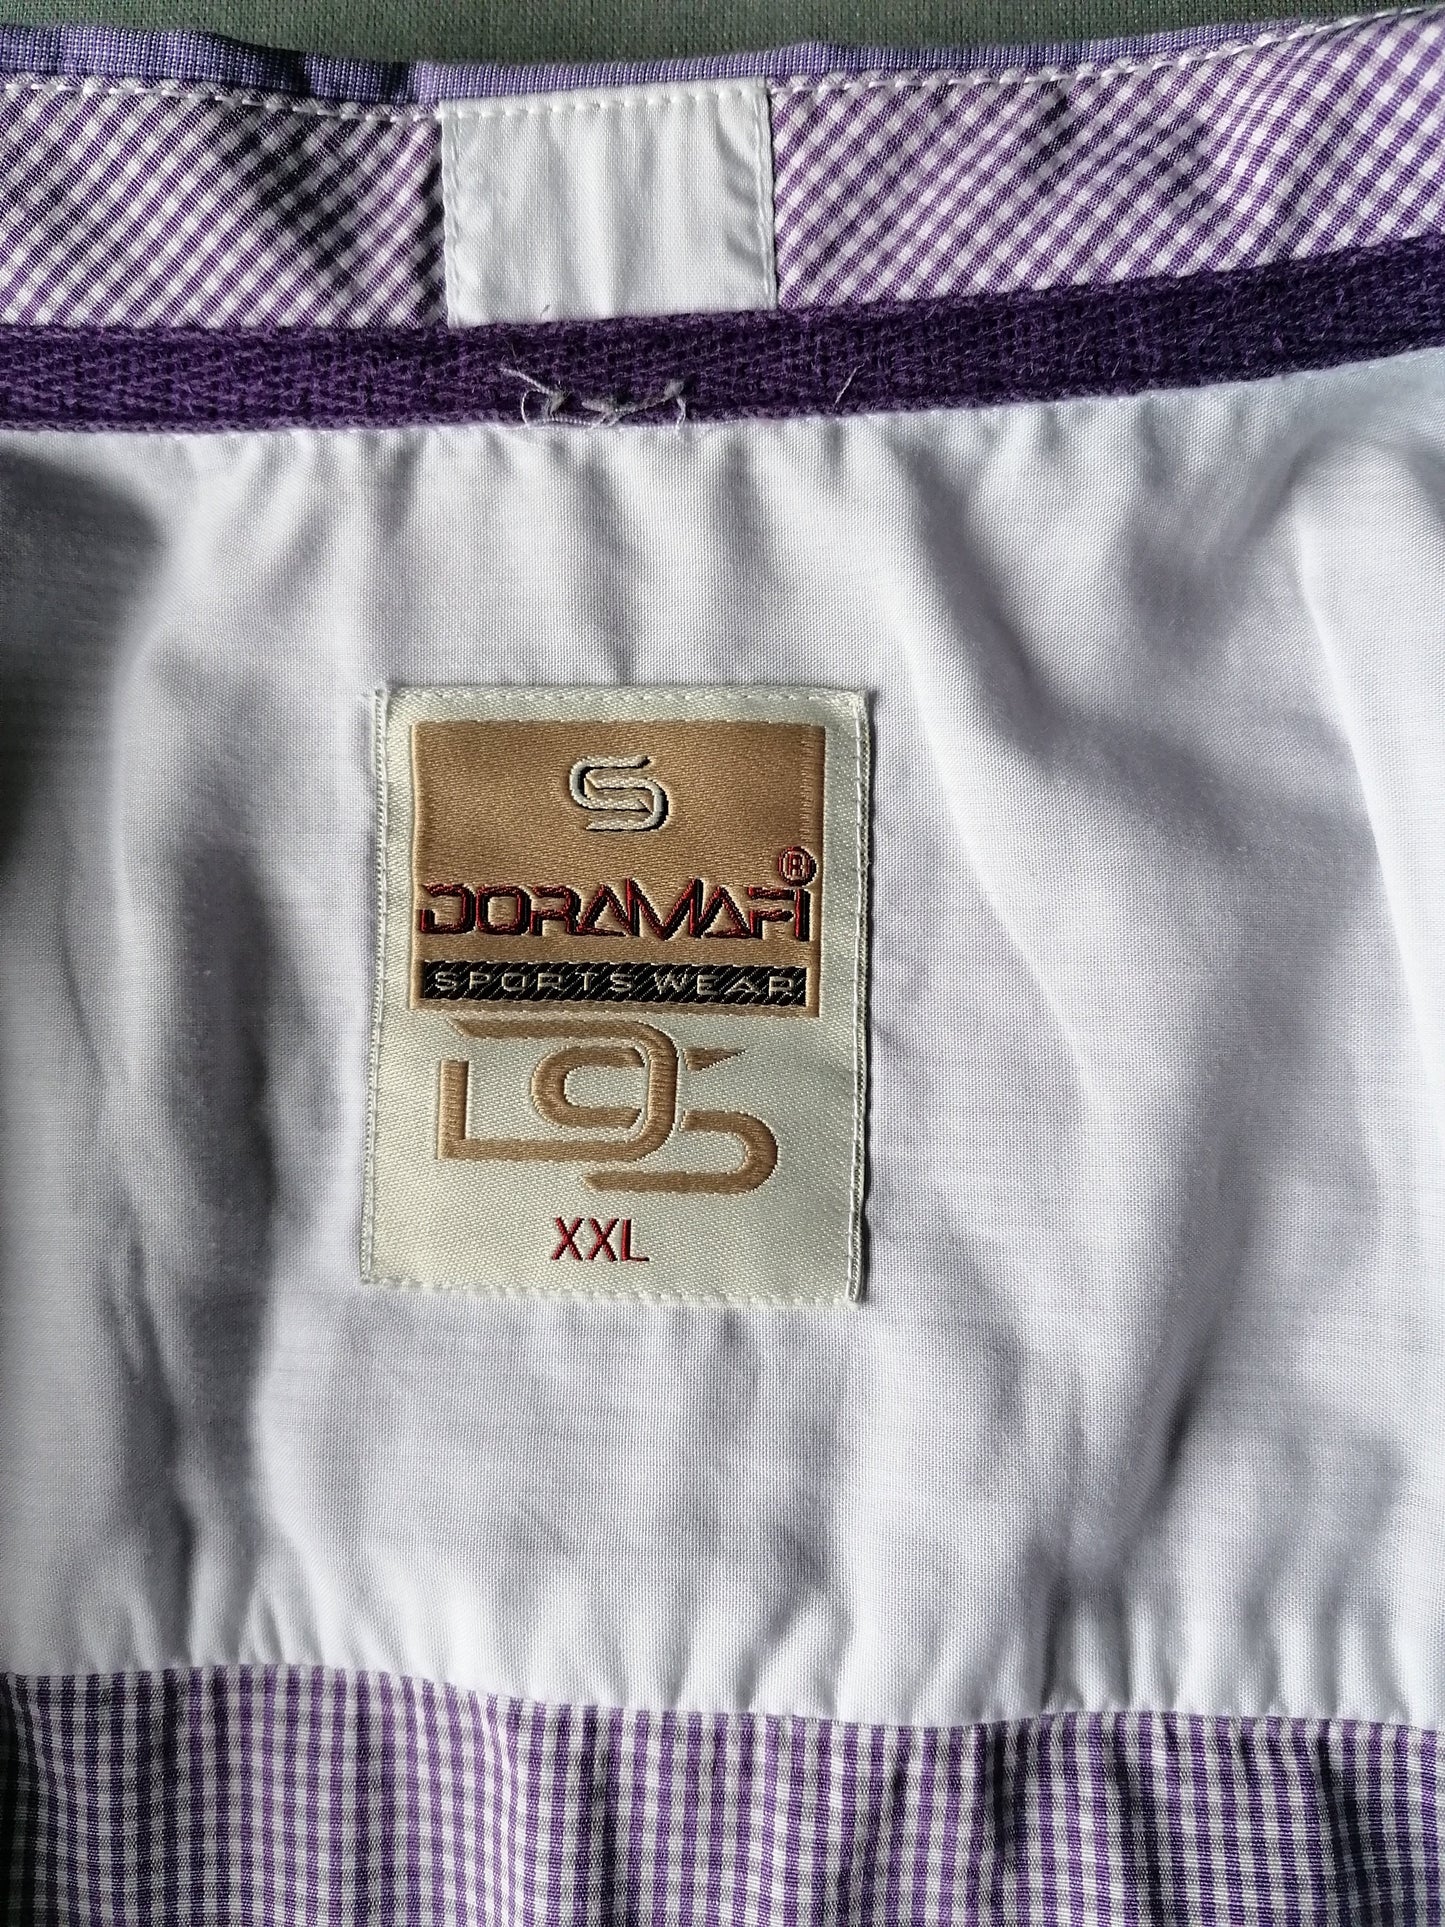 Doramafi overhemd. Paar Wit geblokt met applicaties. Maat XL.